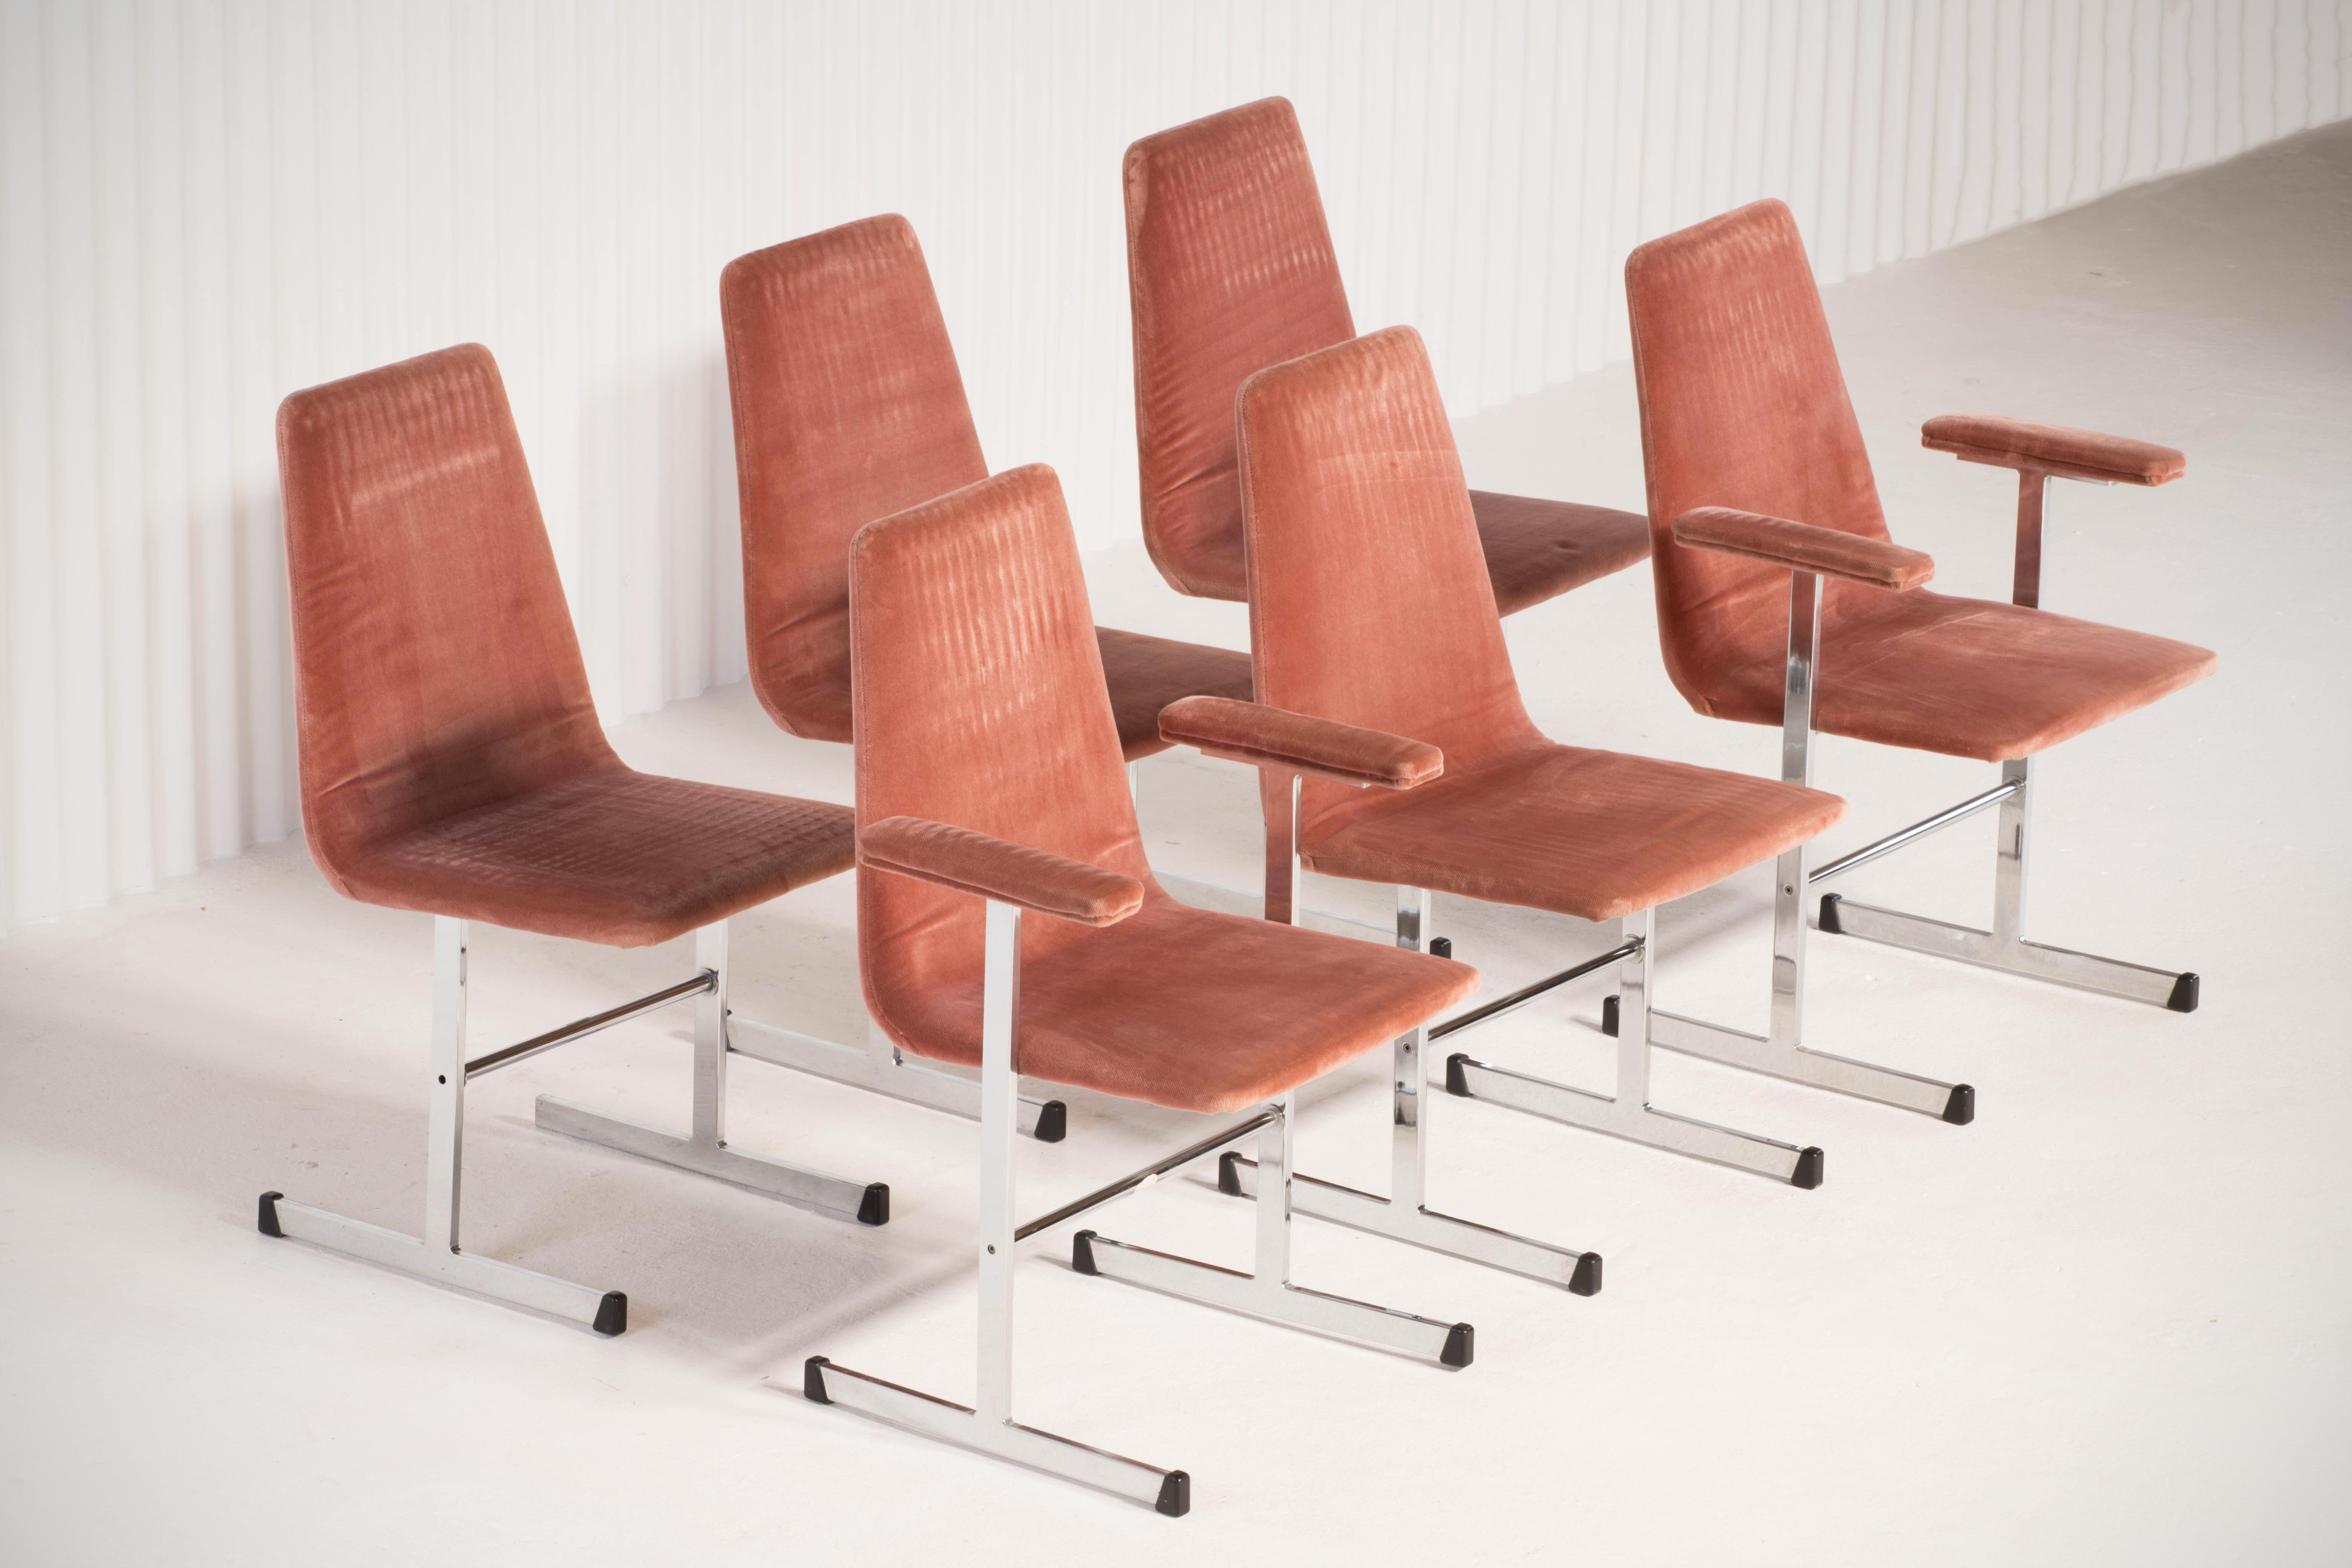 Dieses vom britischen Möbelhaus Pieff entworfene und hergestellte Set aus sechs Esszimmerstühlen ist ein fantastisches Beispiel für das klassische Design der 1970er Jahre.

Ausgestattet mit verchromten Freischwingern.

Die Chromrahmen wurden mit